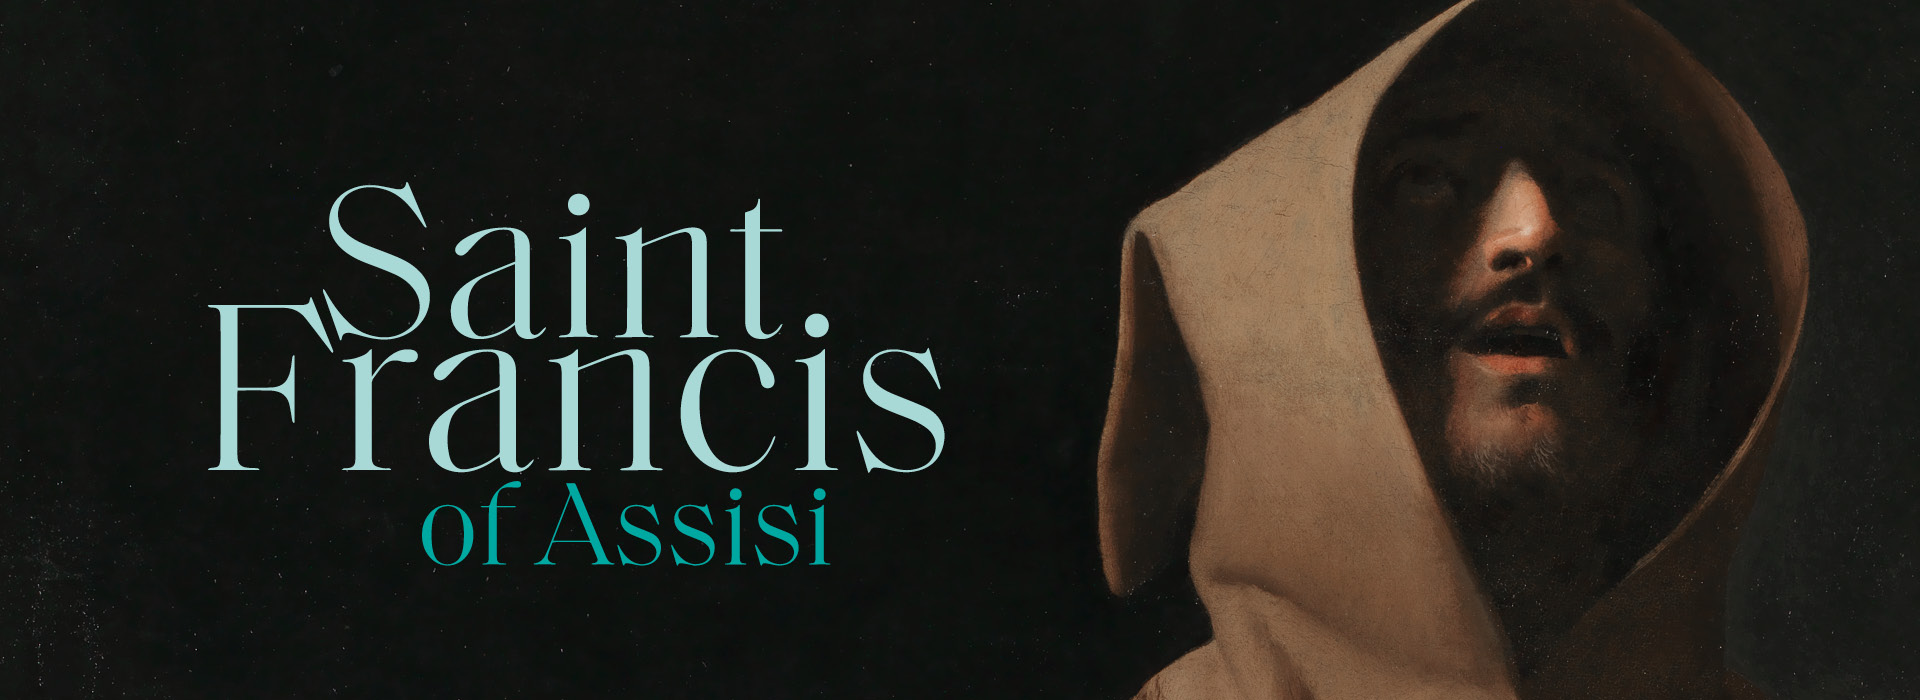 Выставка, посвященная святому Франциску Ассизскому, откроется в Национальной галерее в Лондоне